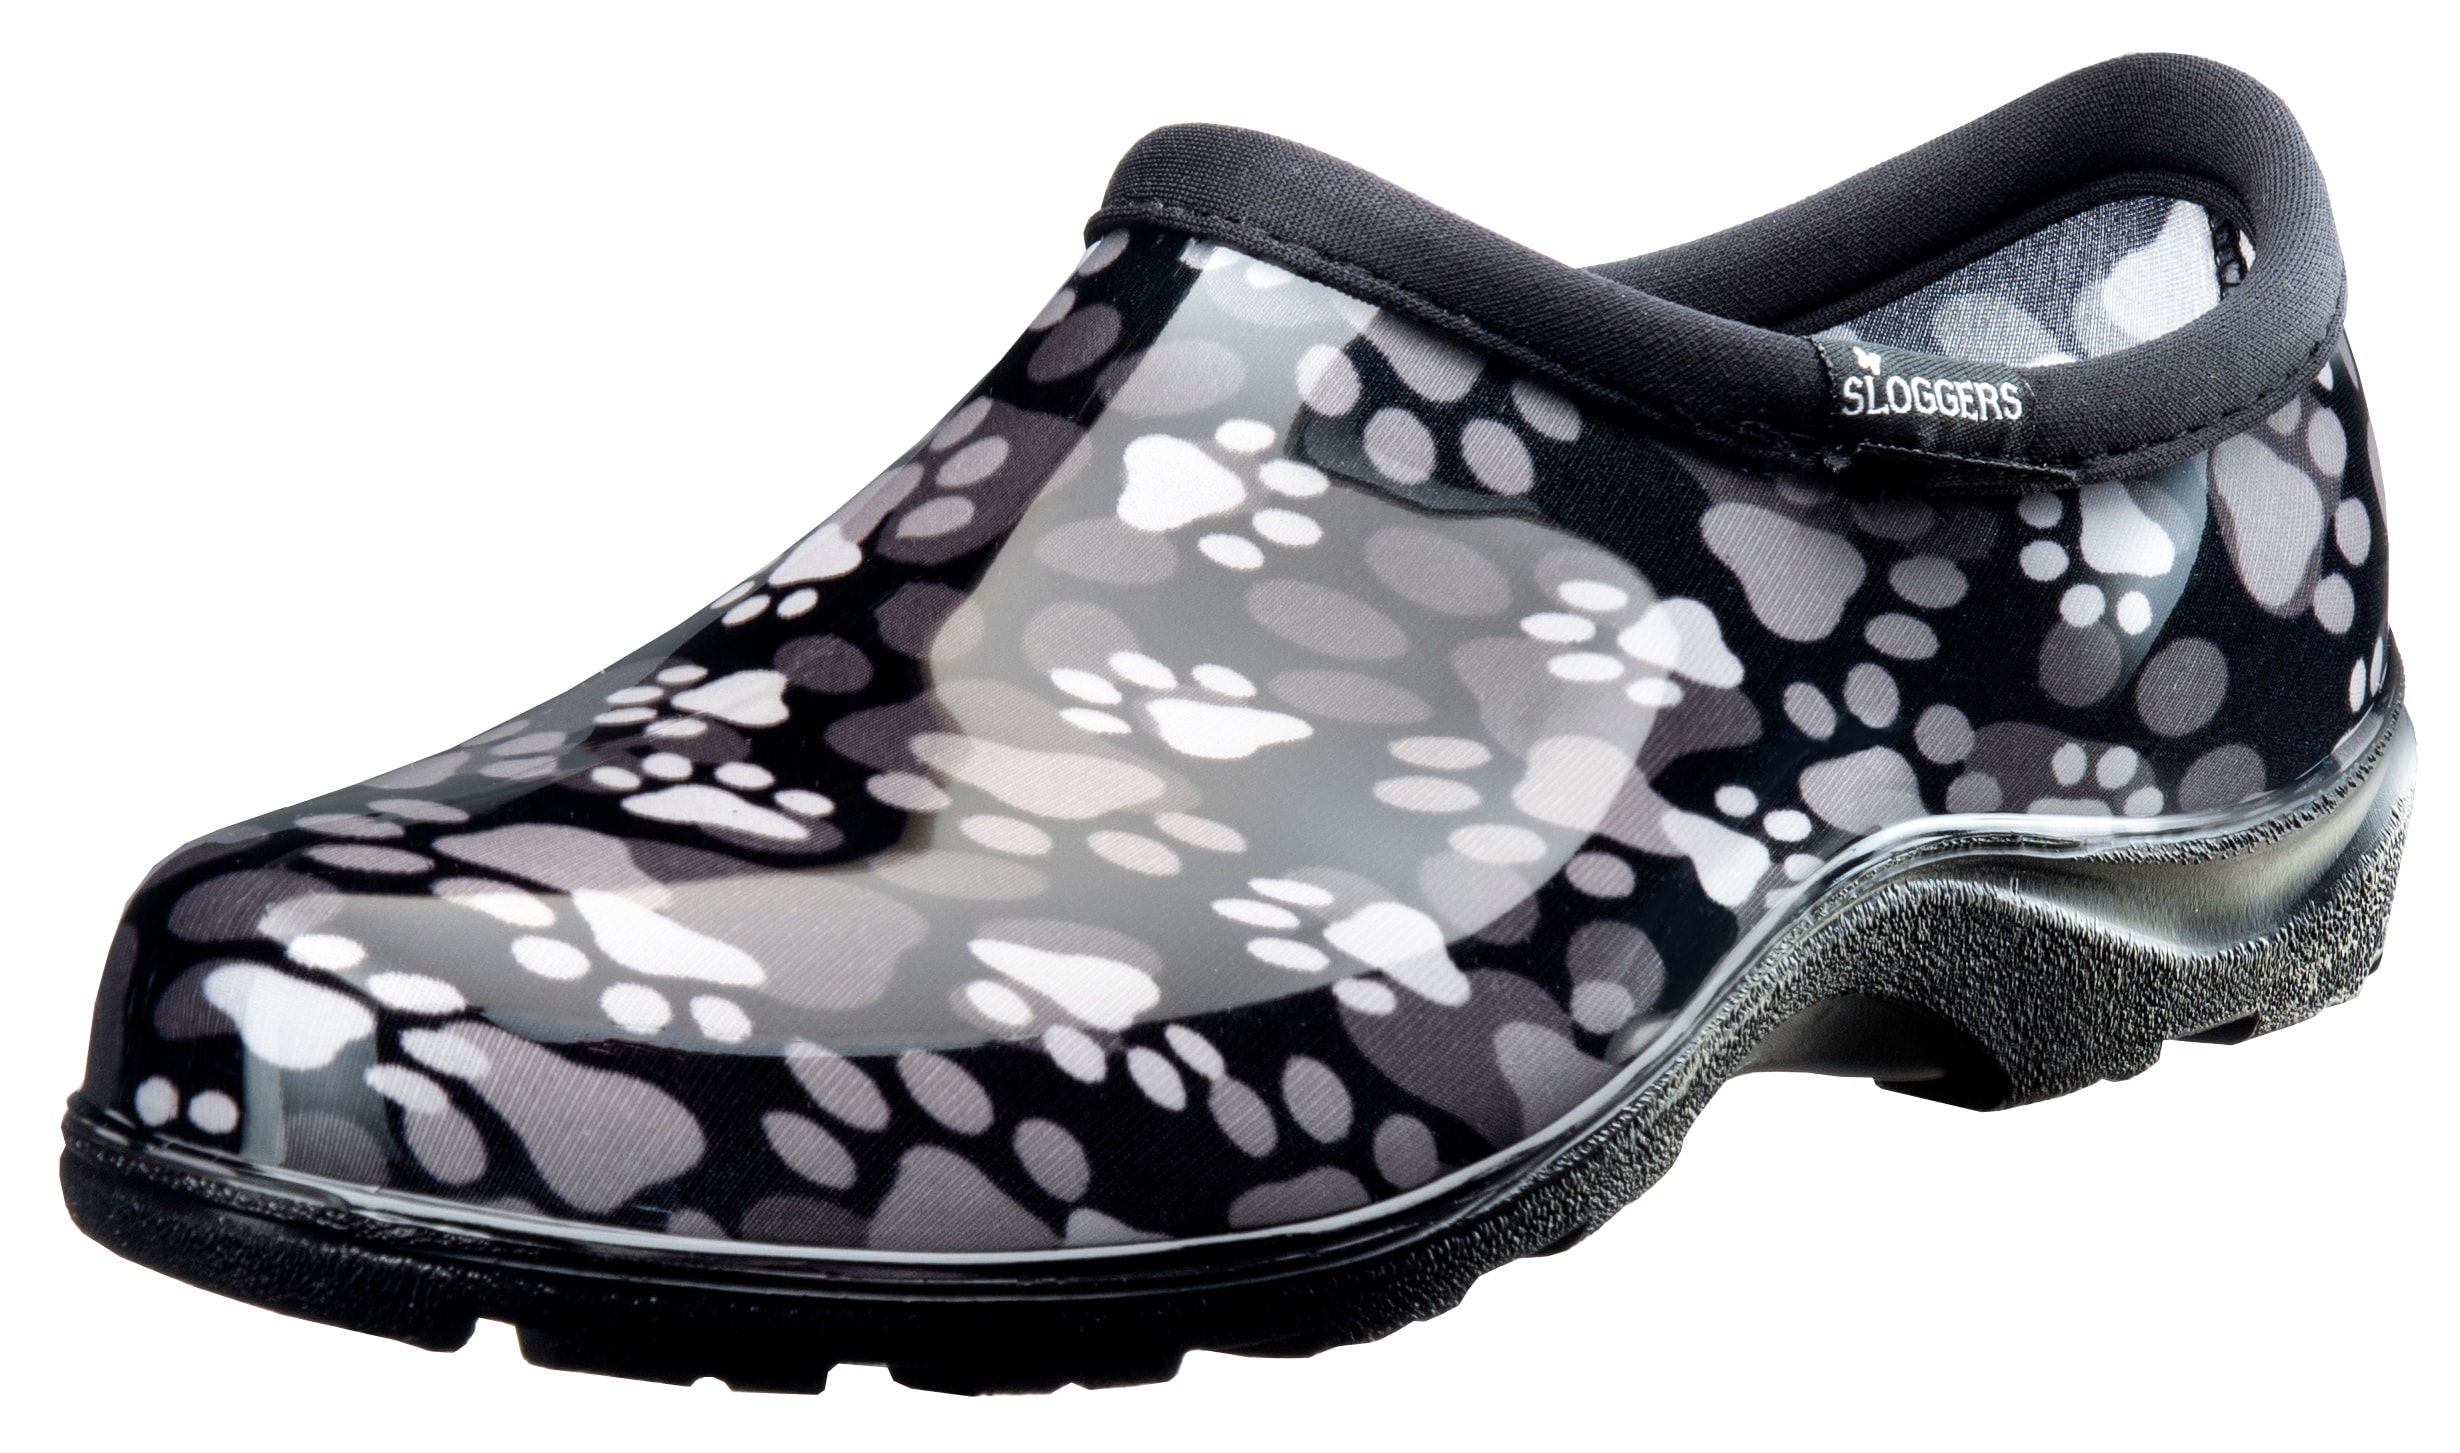 Sloggers - Waterproof Comfort Footwear